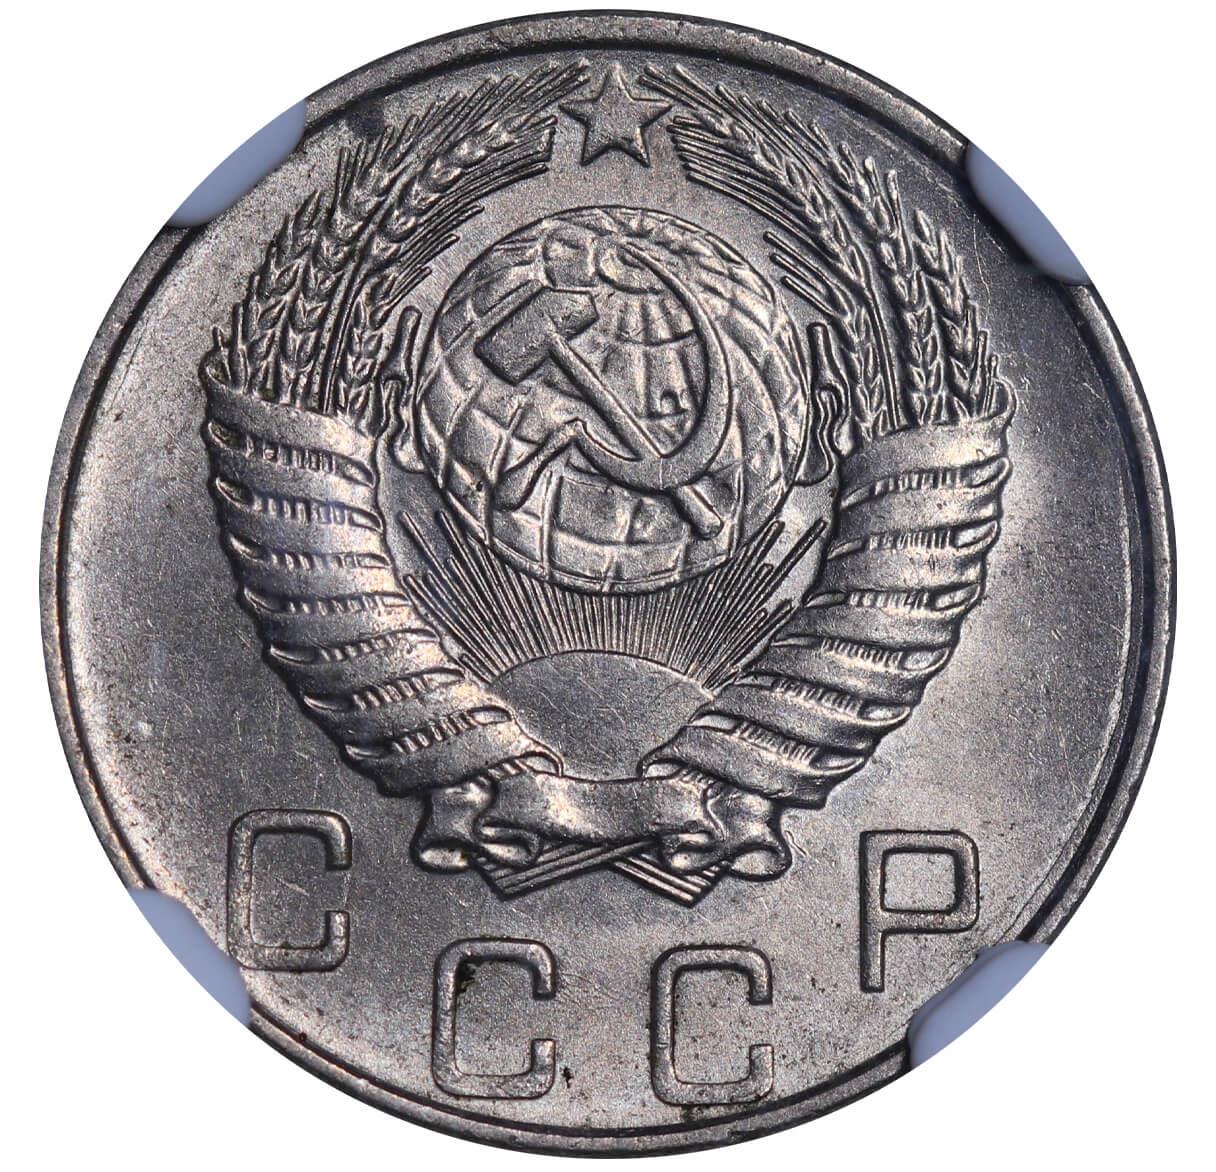 Soviet Union, 10 Kopecks, 1956 year, NGC, MS 63 - Bild 2 aus 3